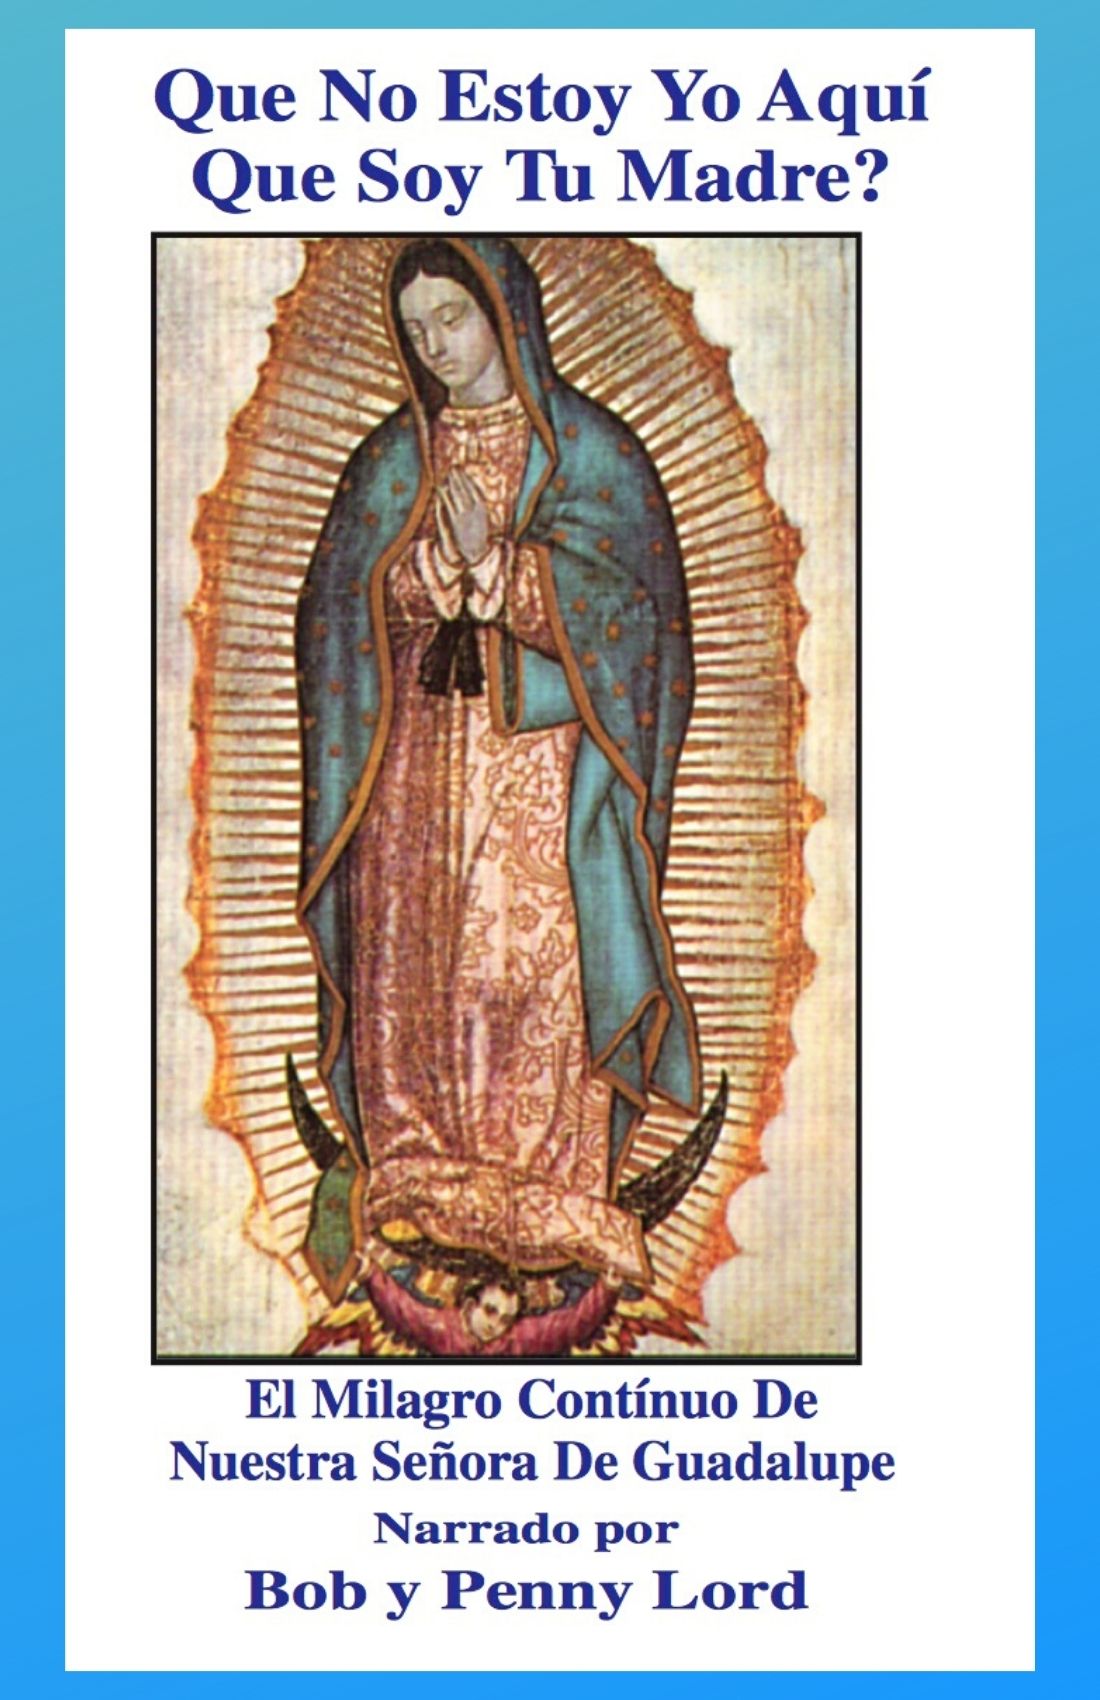 Nuestra Senora de Guadalupe - Bob and Penny Lord